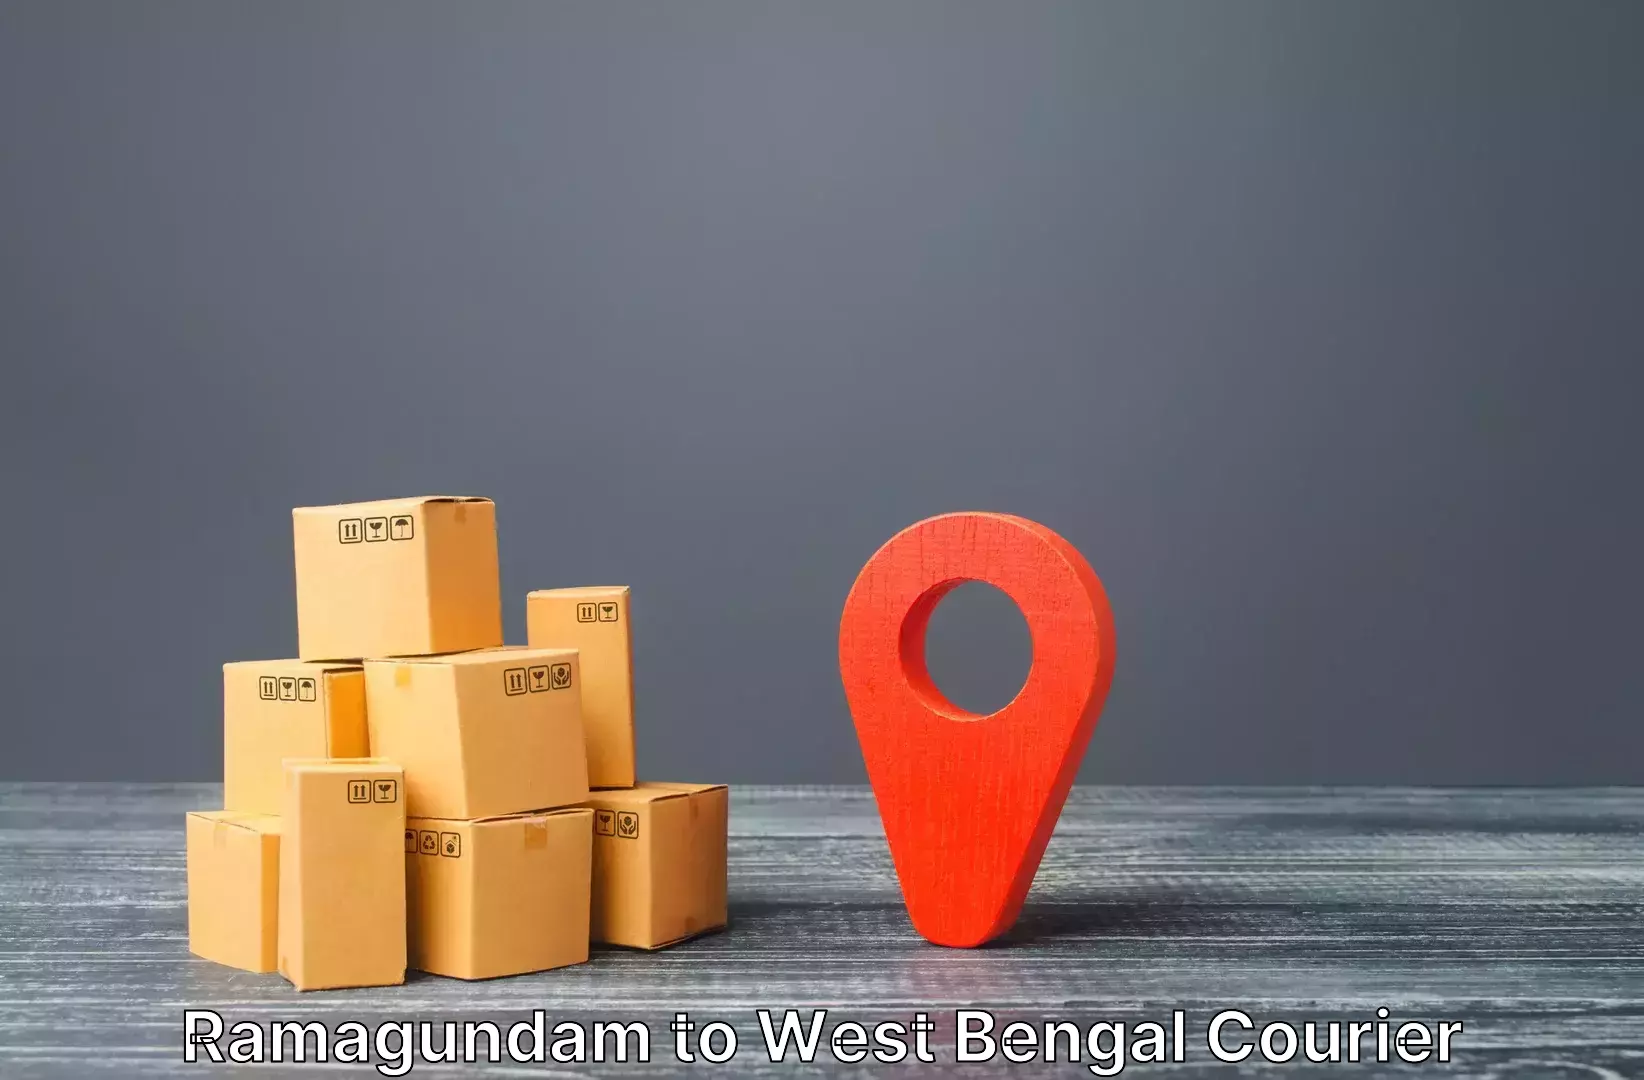 Luggage transit service Ramagundam to Bishnupur